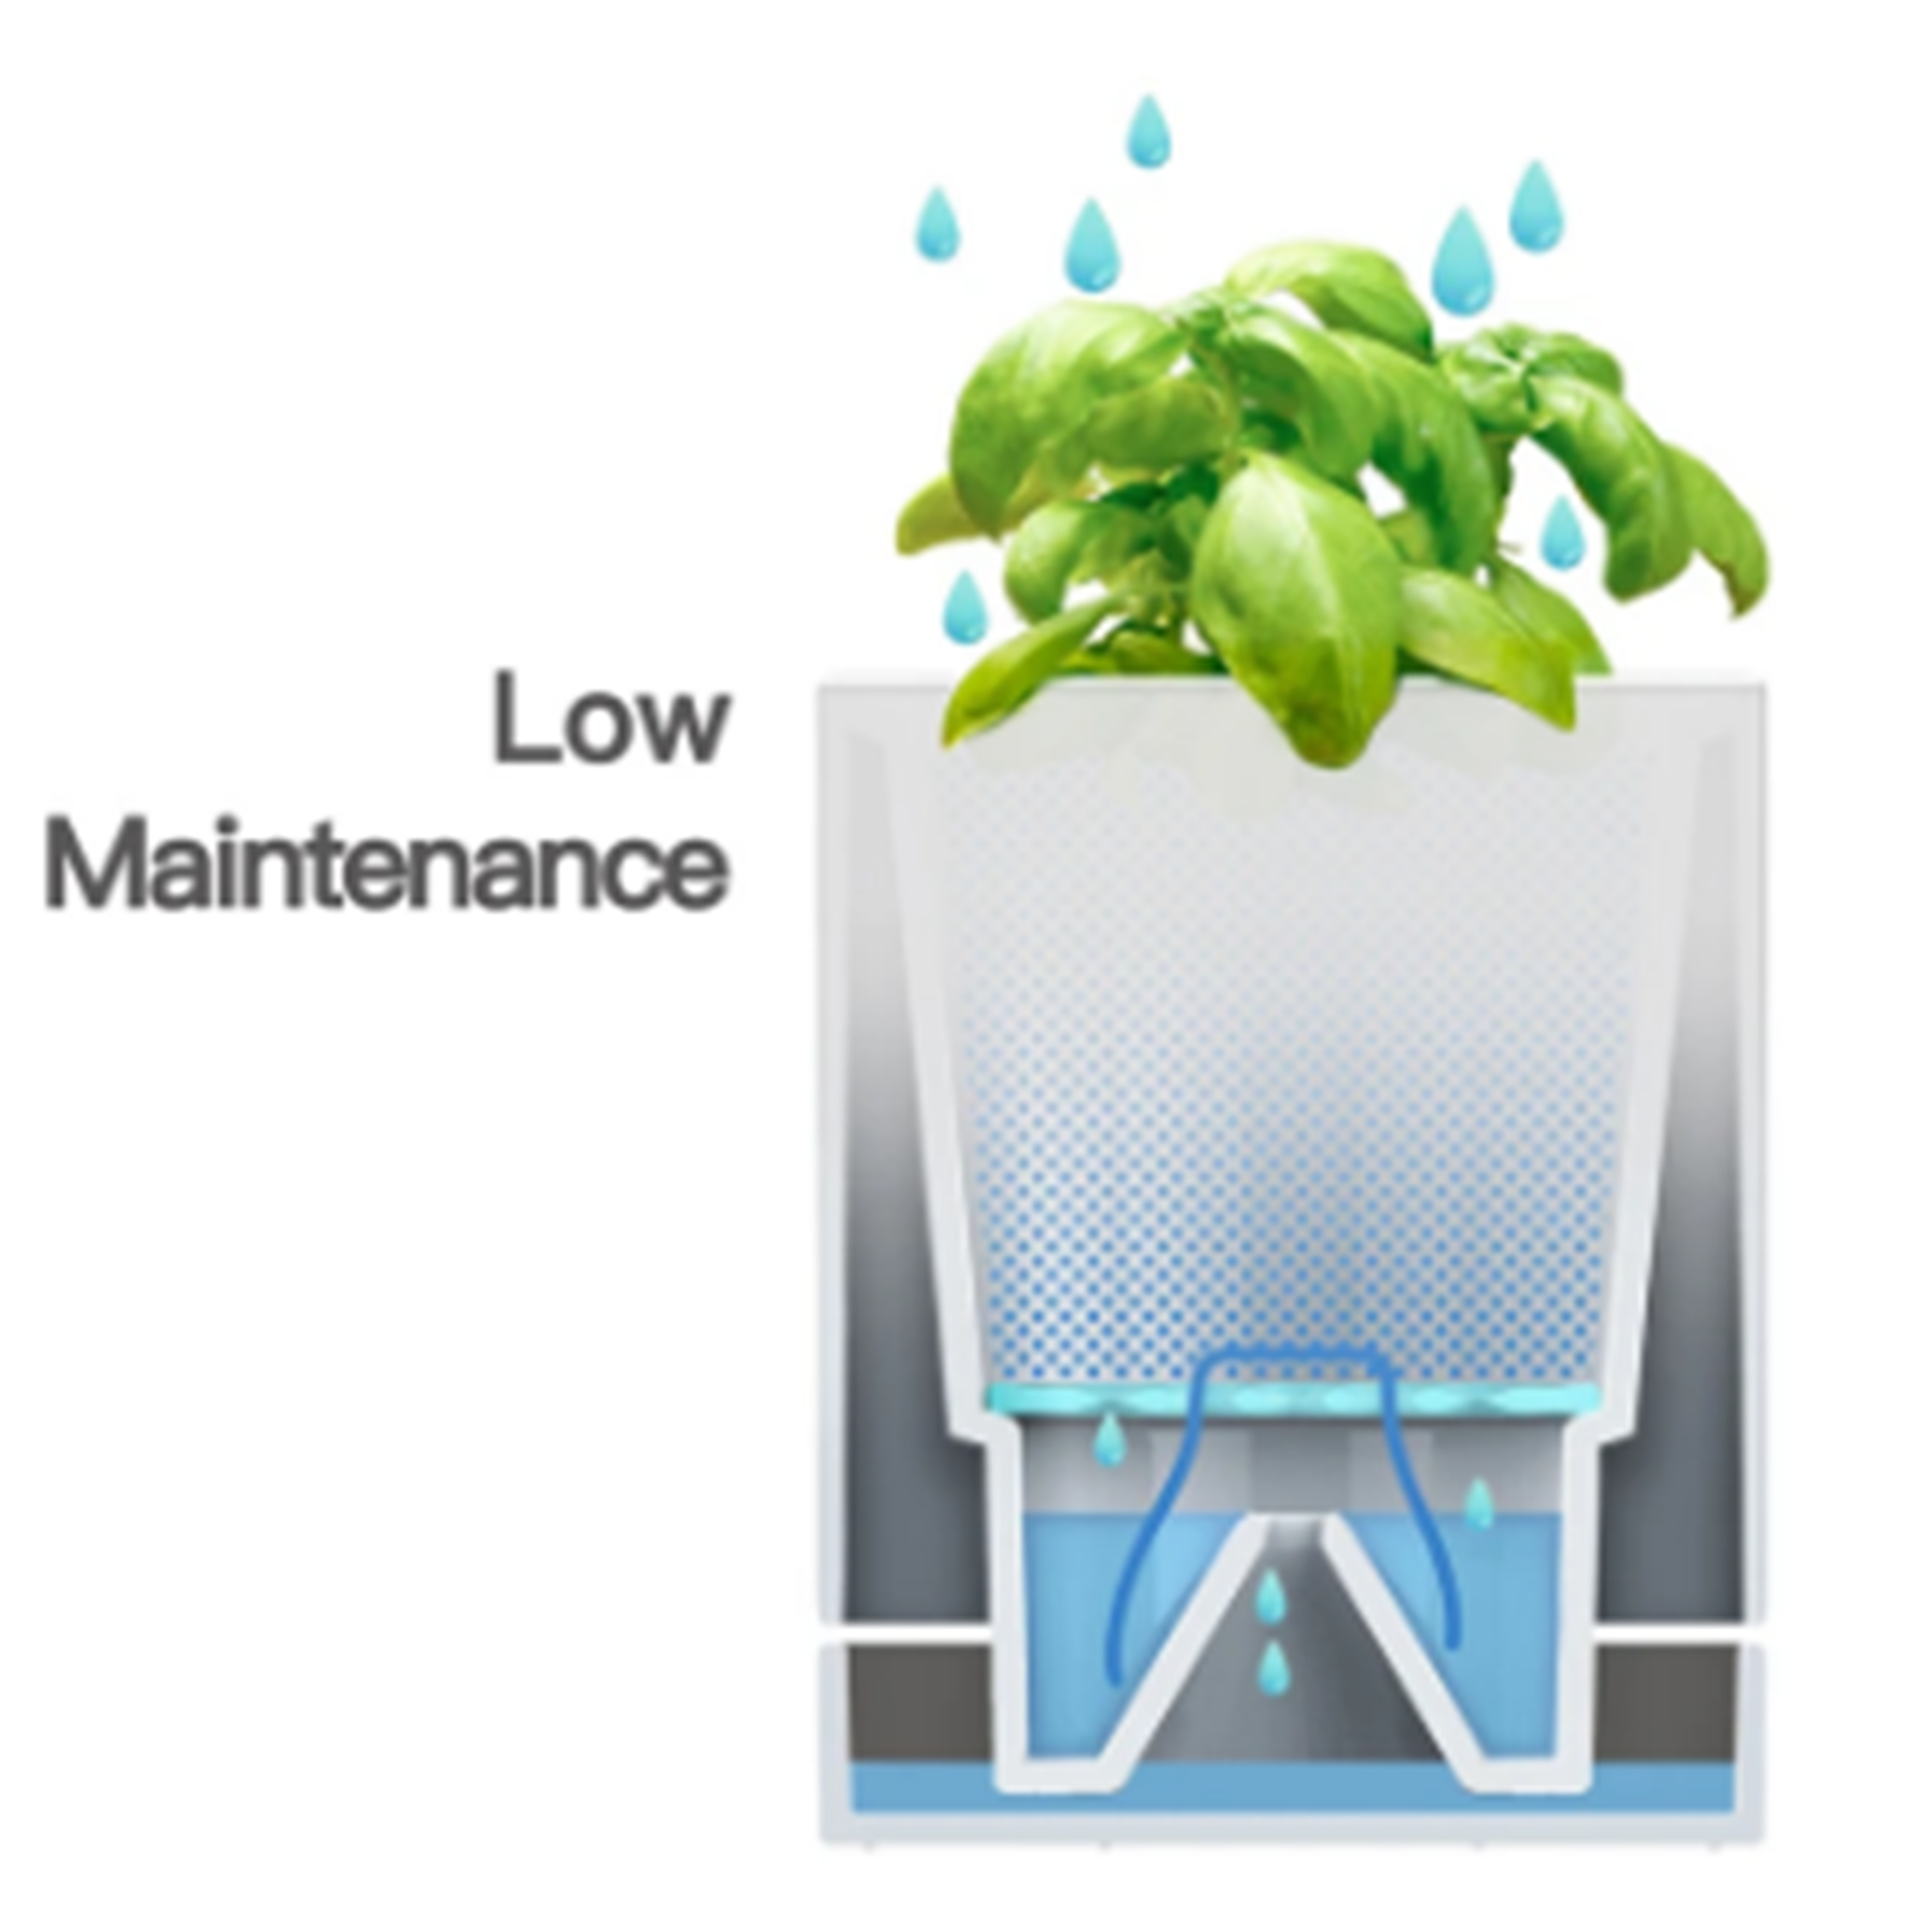 LeGrow TG-G ''Simple Clean'' Modular Indoor Smart Garden Pot Water Reservoir Graphic | Happy Piranha